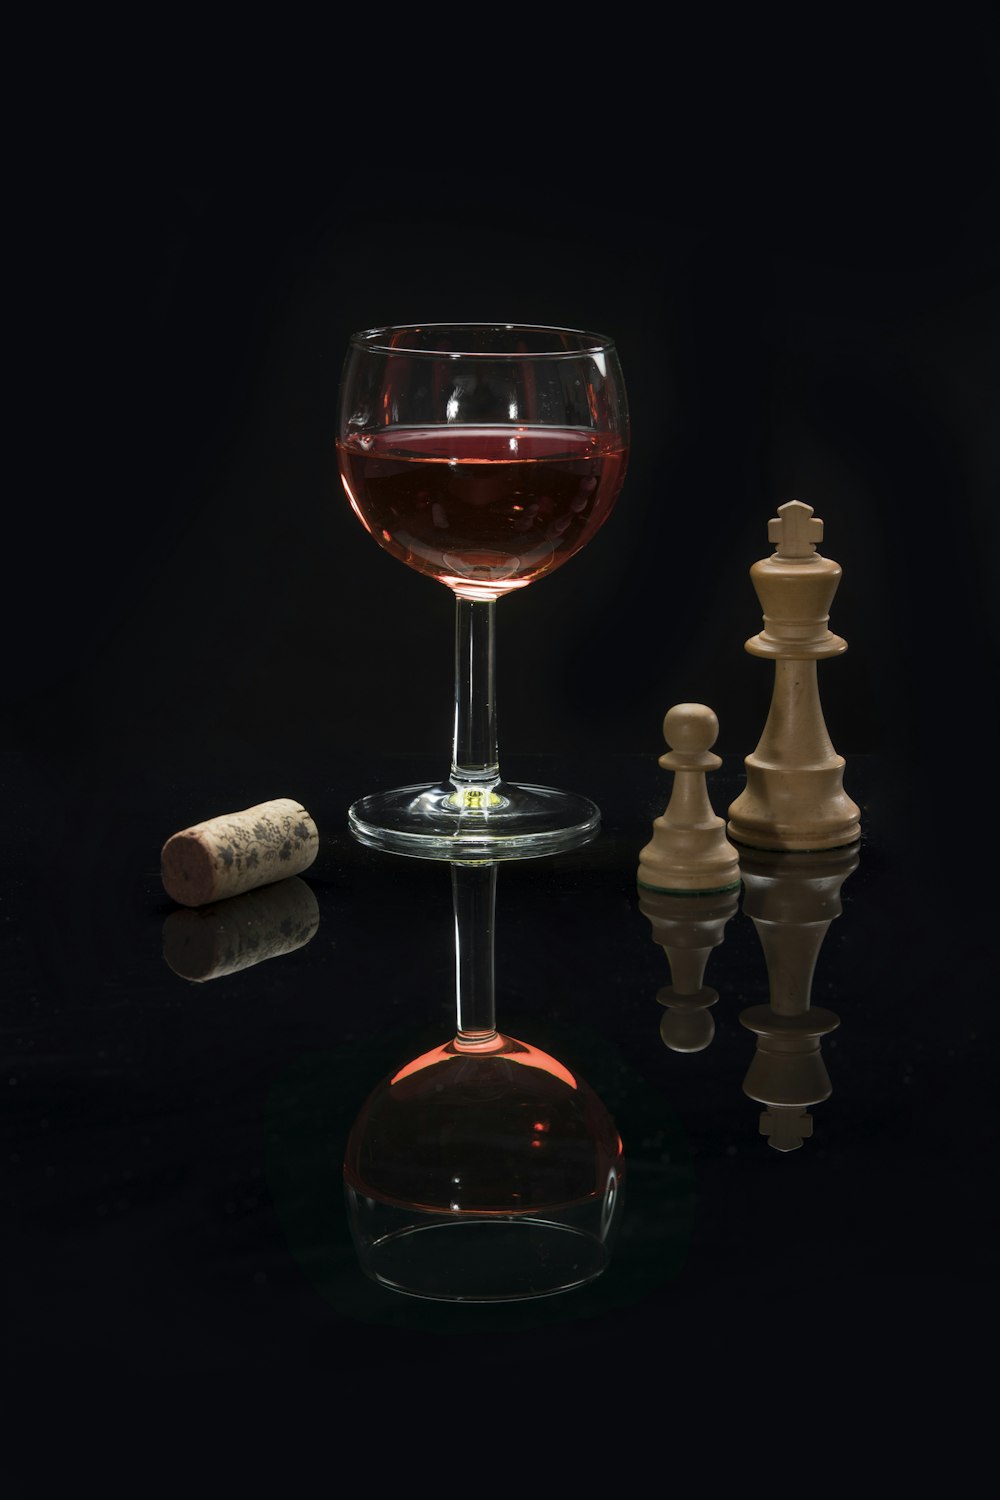 calice da vino a stelo lungo con liquido rosso